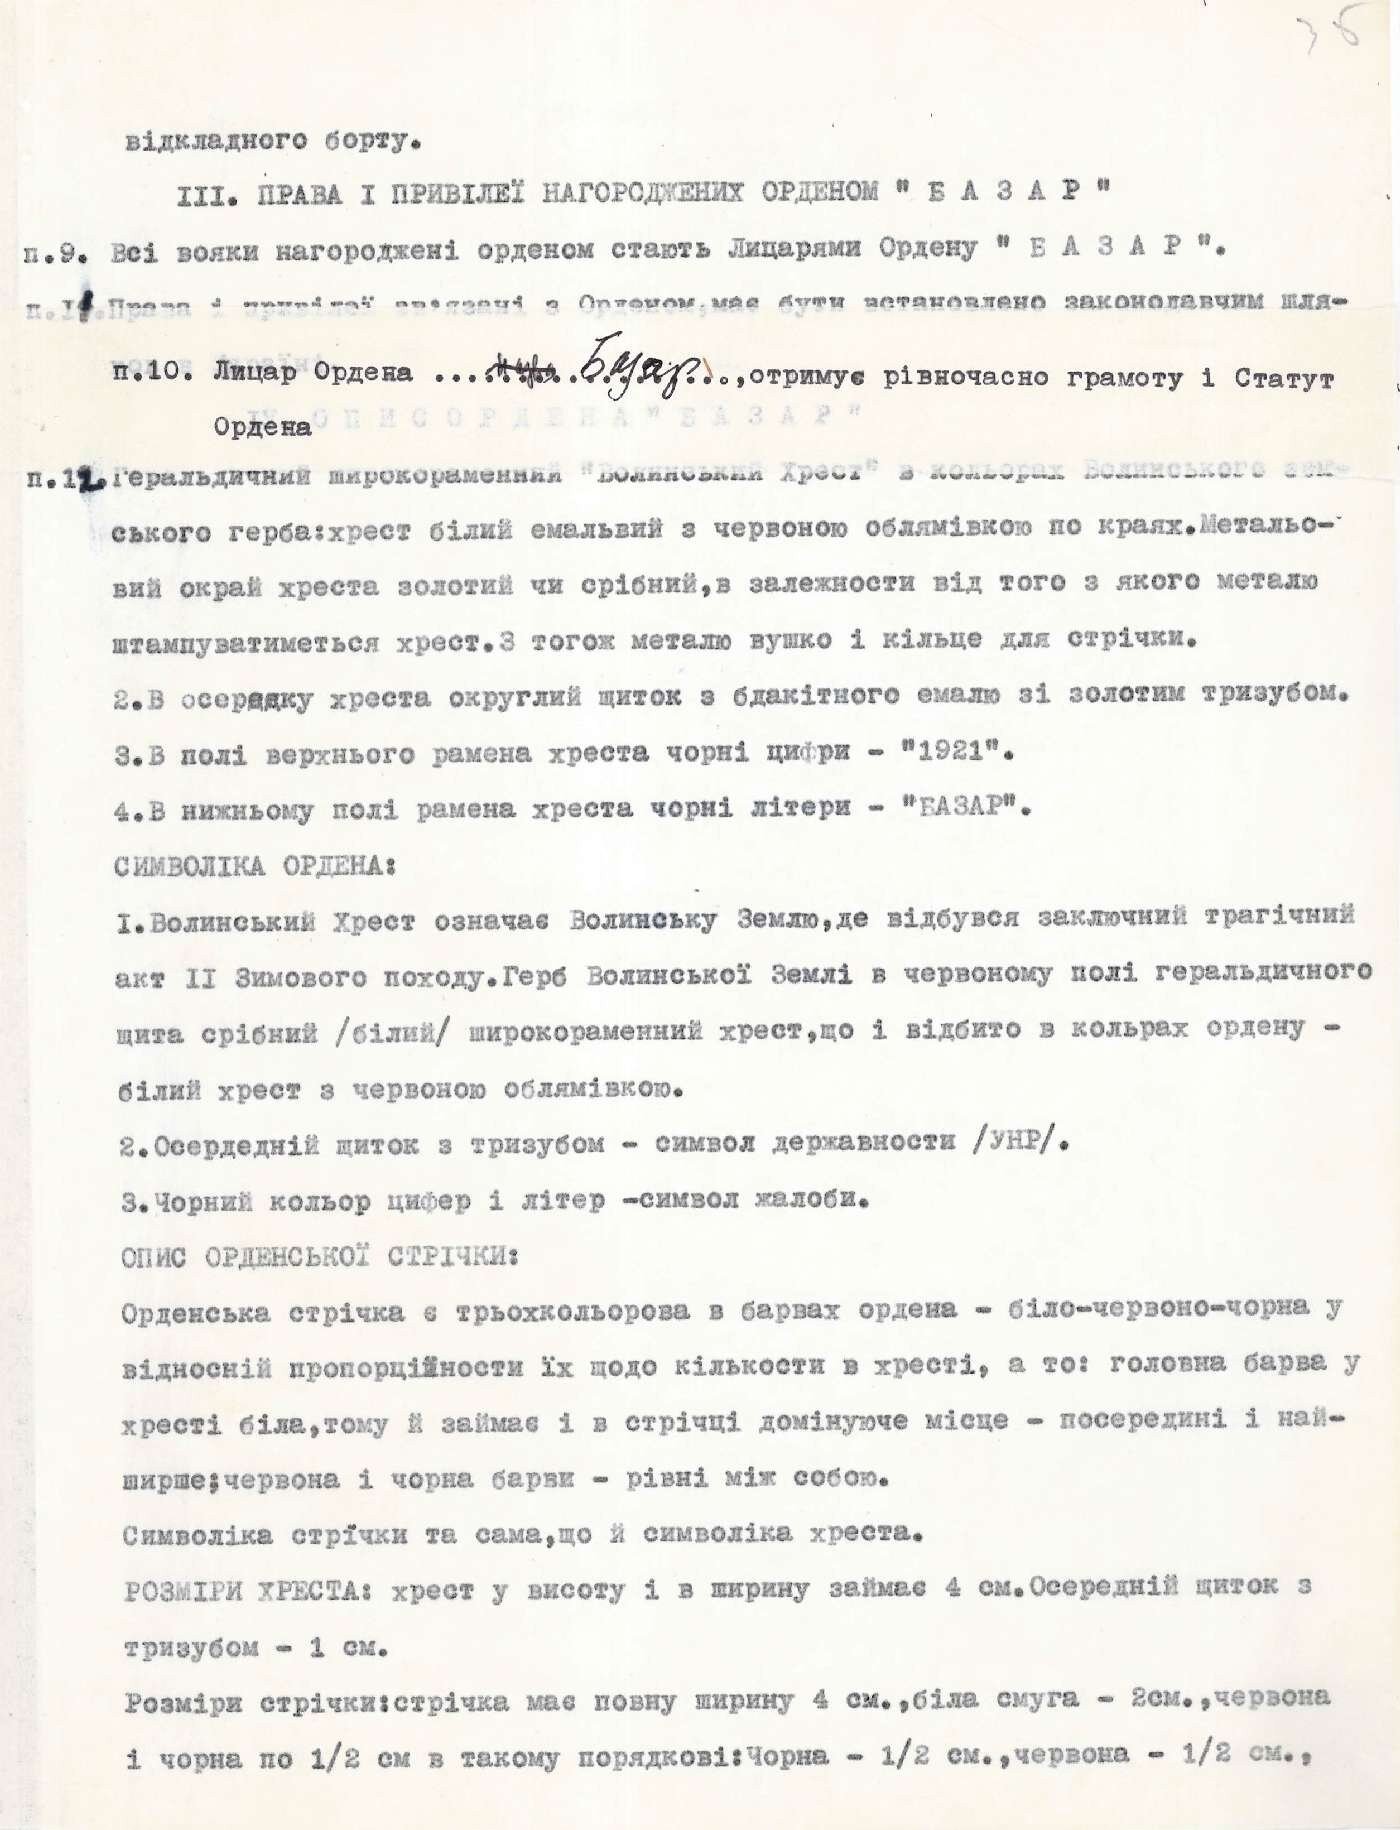 Проєкт Закону УНР про встановлення воєнного ордену «Базар». 1973 р.